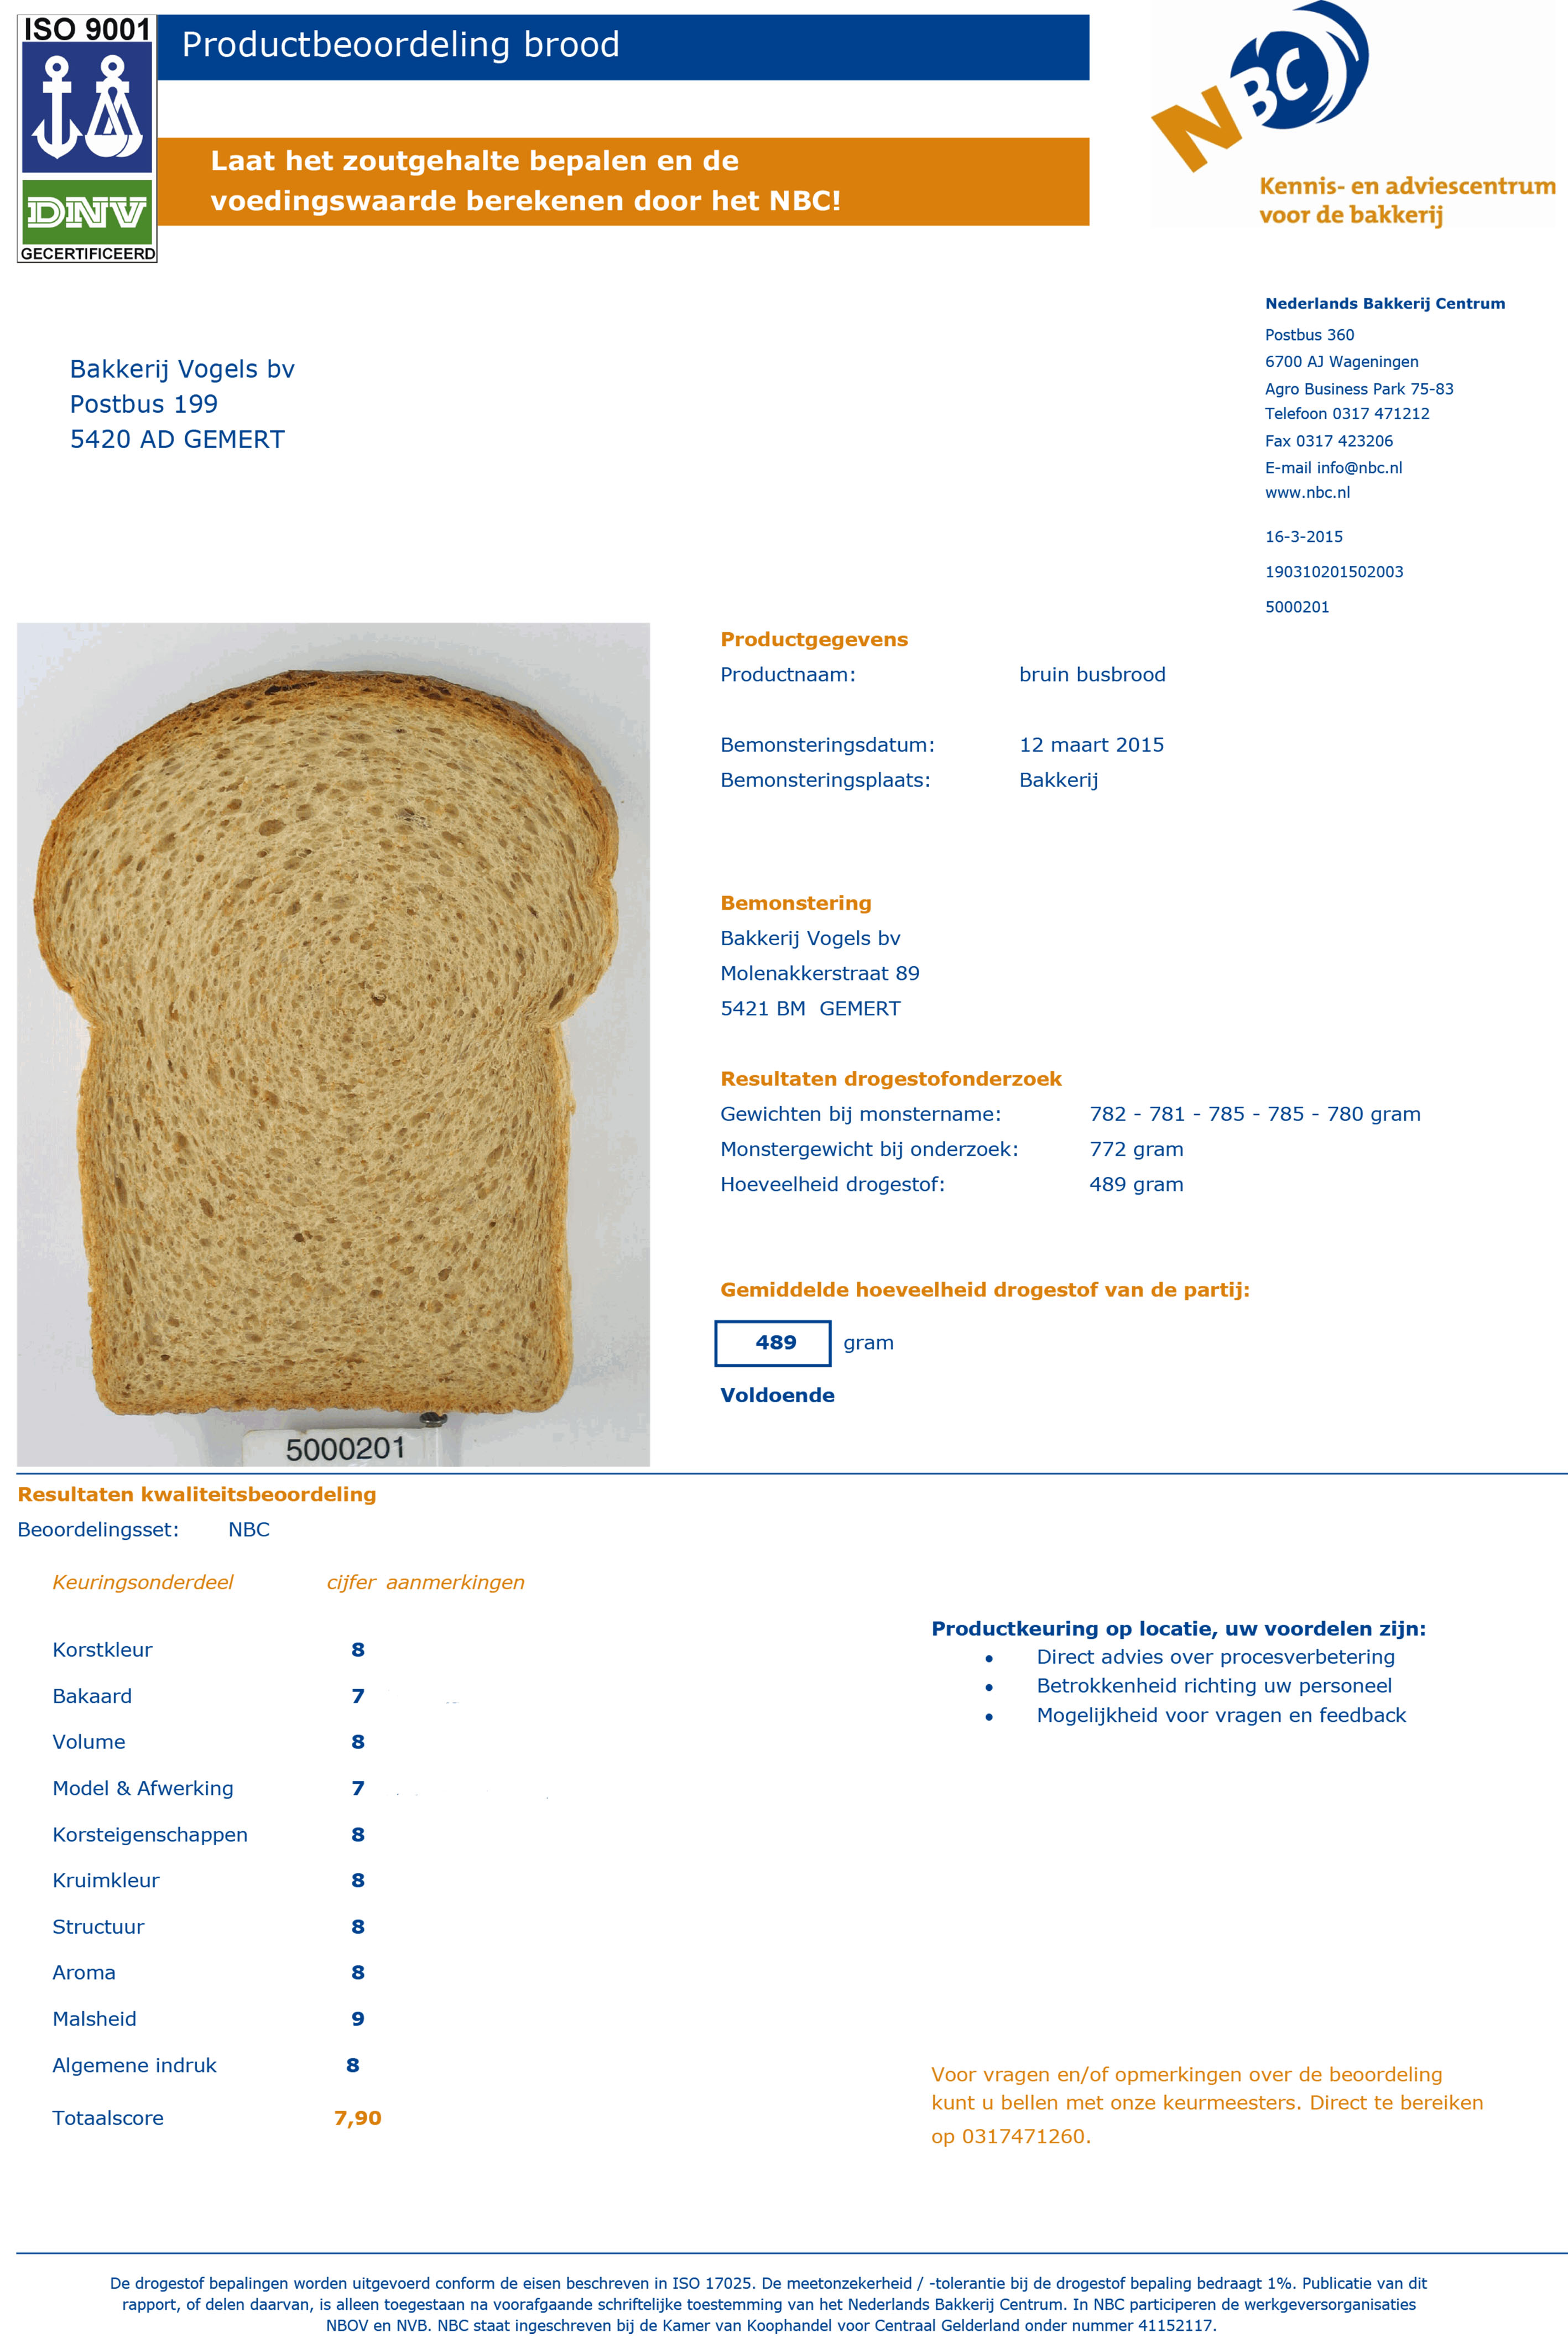 broodbeoordeling NBC maart 2015 site